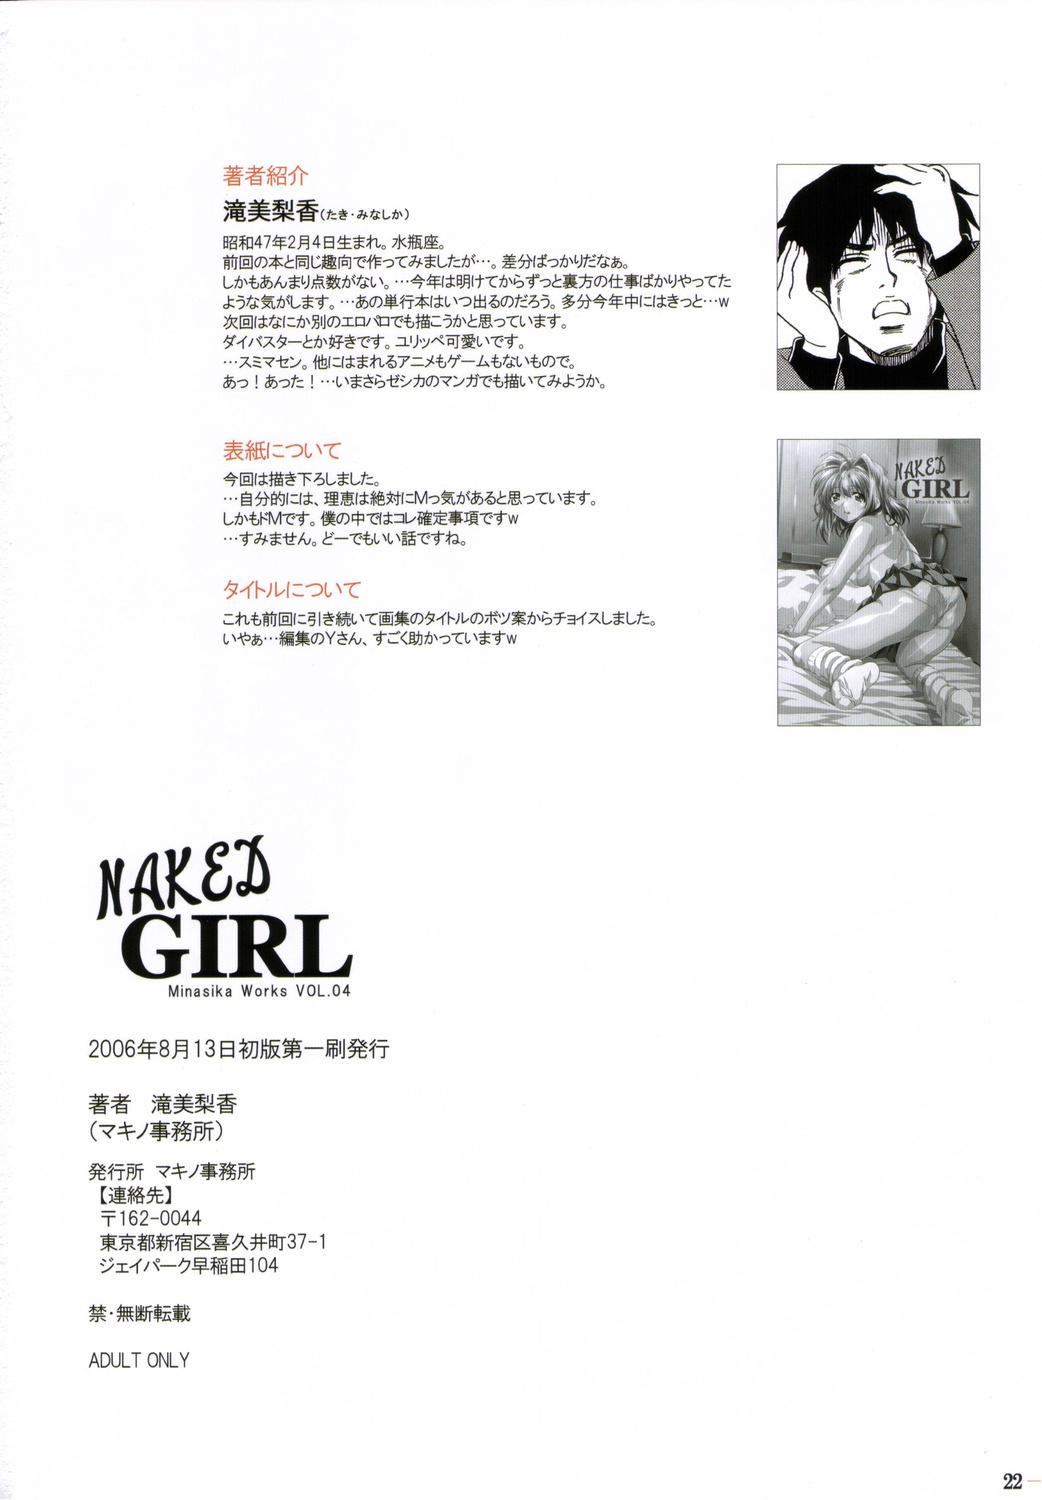 MINASHIKA WORKS 04 NAKED GIRL 20